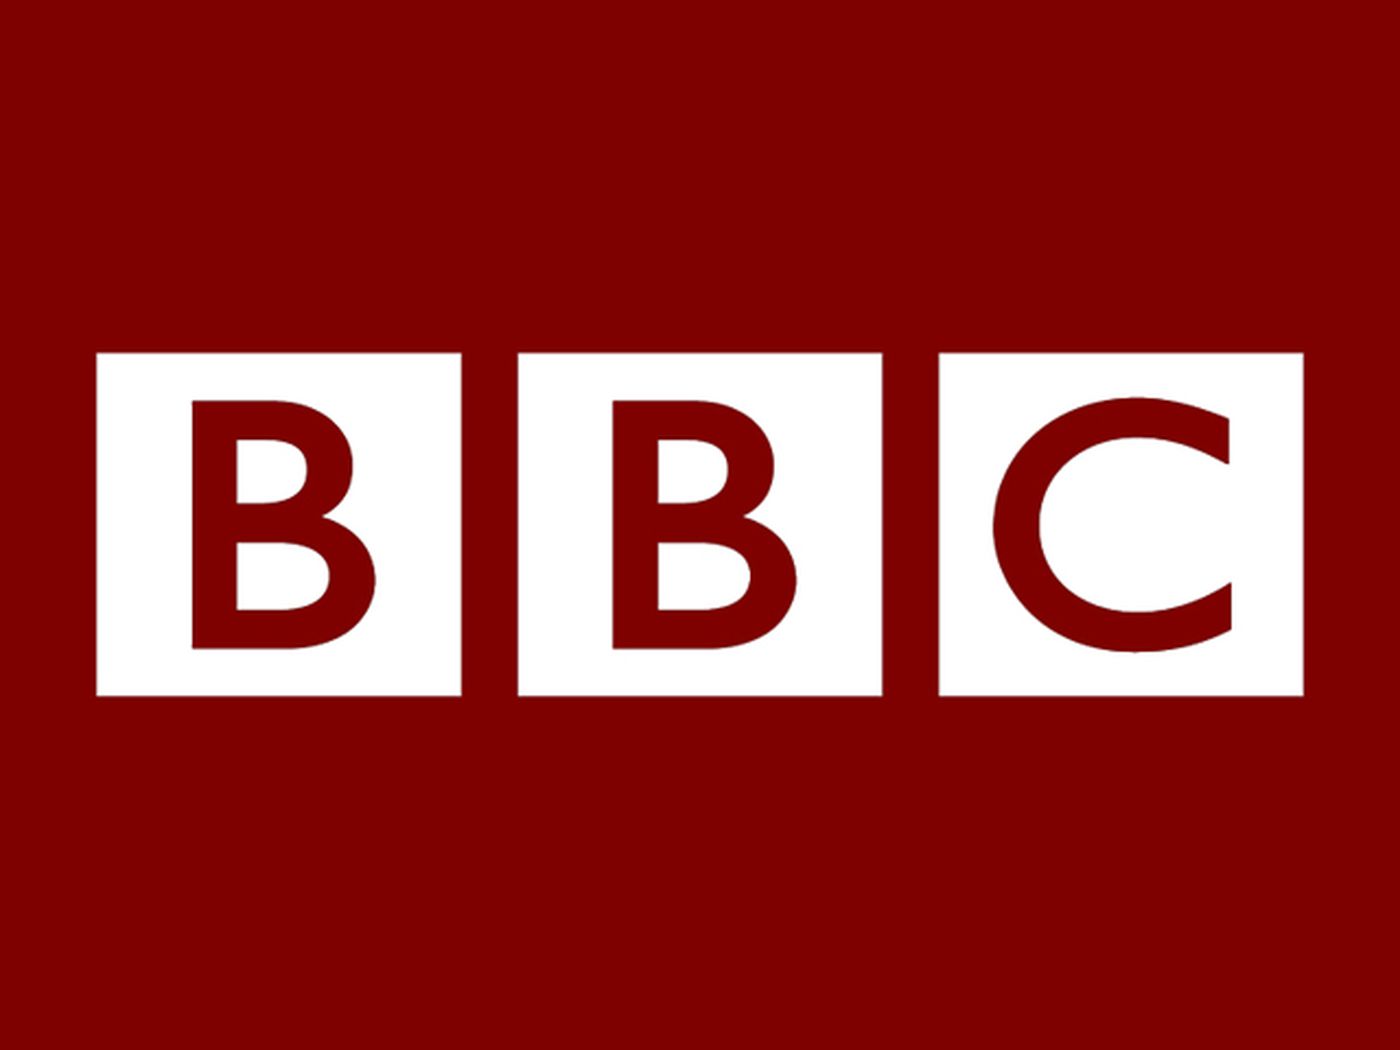 BBC zakazało OpenAI zbierania danych ze swoich stron internetowych, ale wyraziło zaangażowanie w dziennikarstwo AI